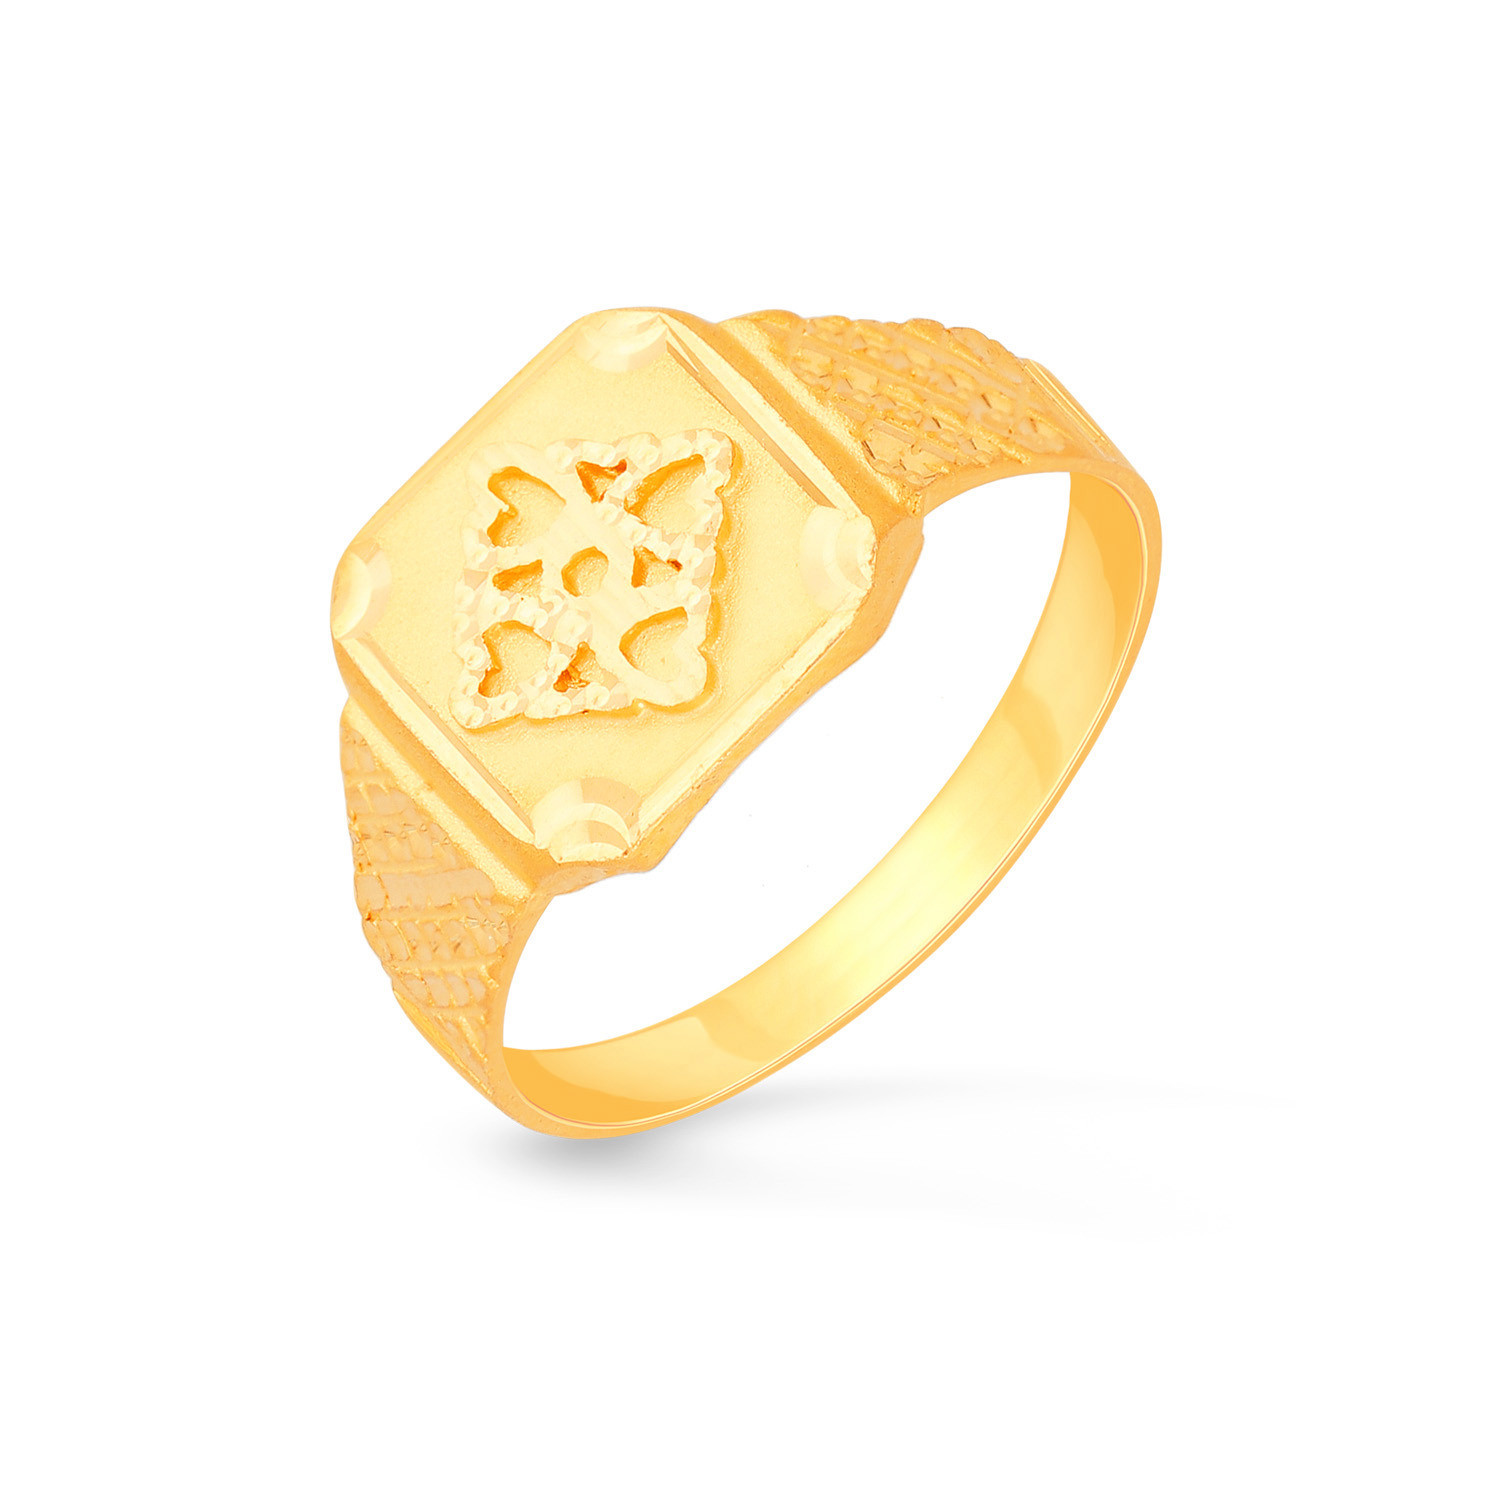 Malabar Gold Ring 1.00006E+11